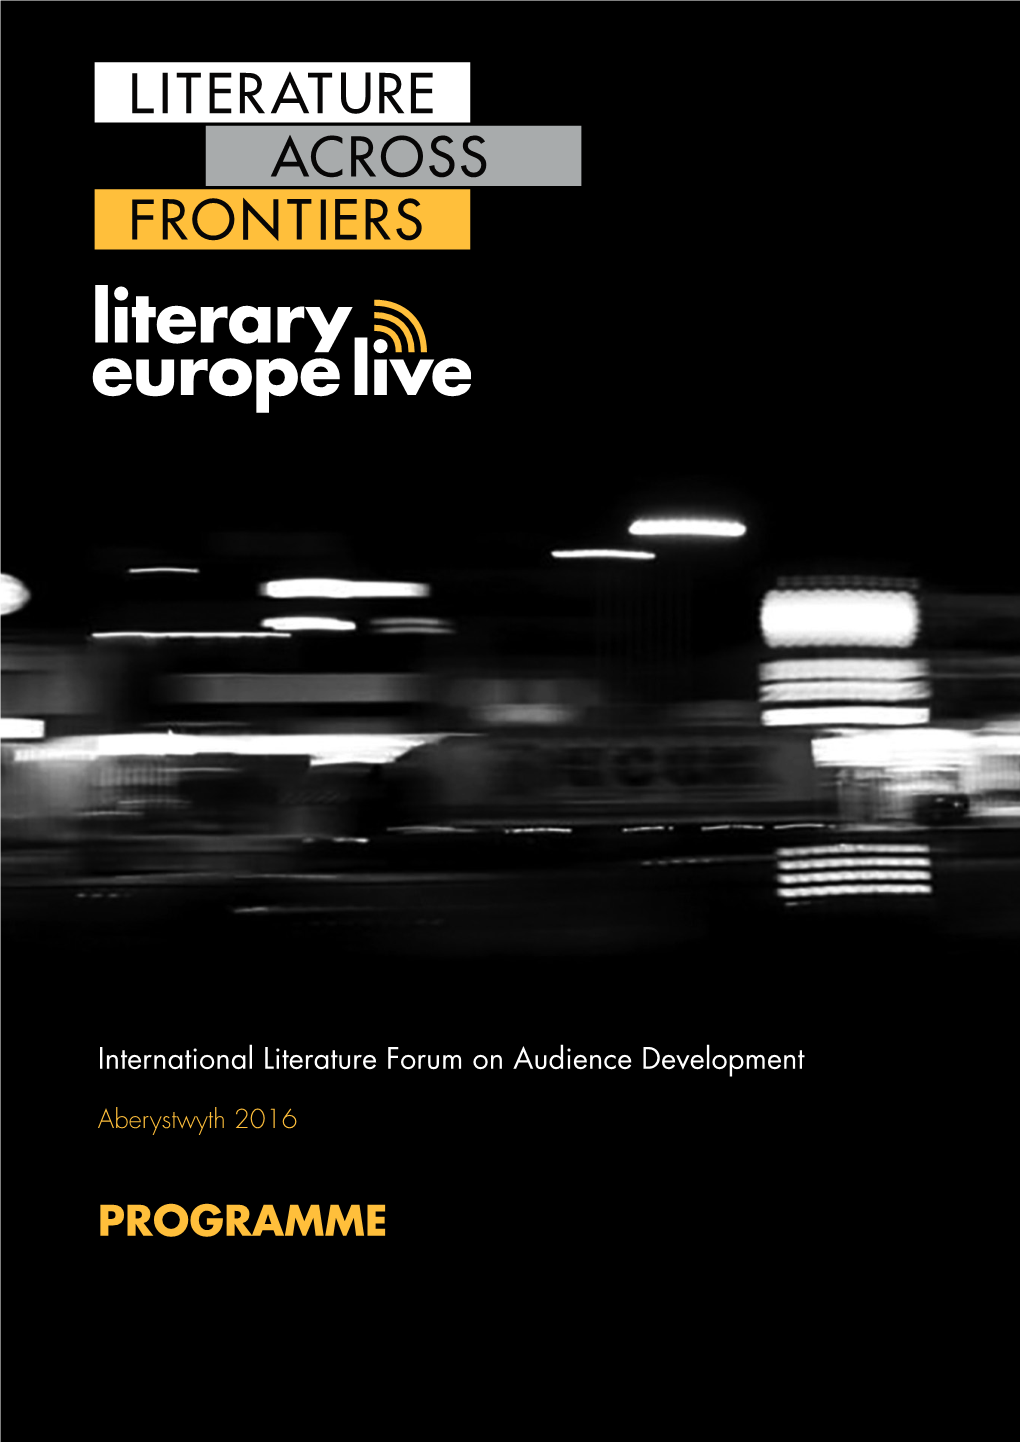 International Literature Forum 2016 Official Programme